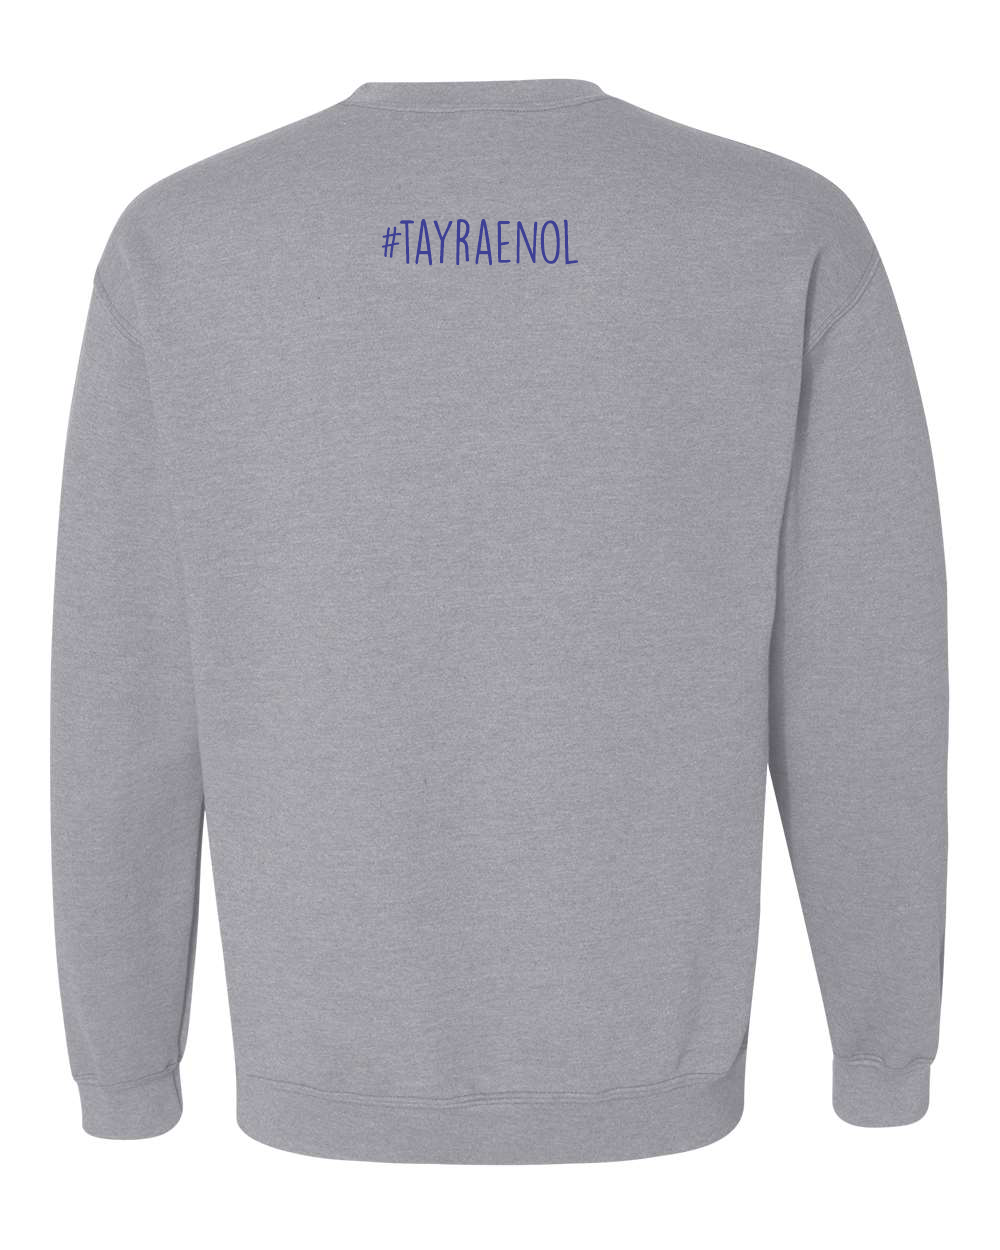 Gray Kentucky Crewneck Sweatshirt